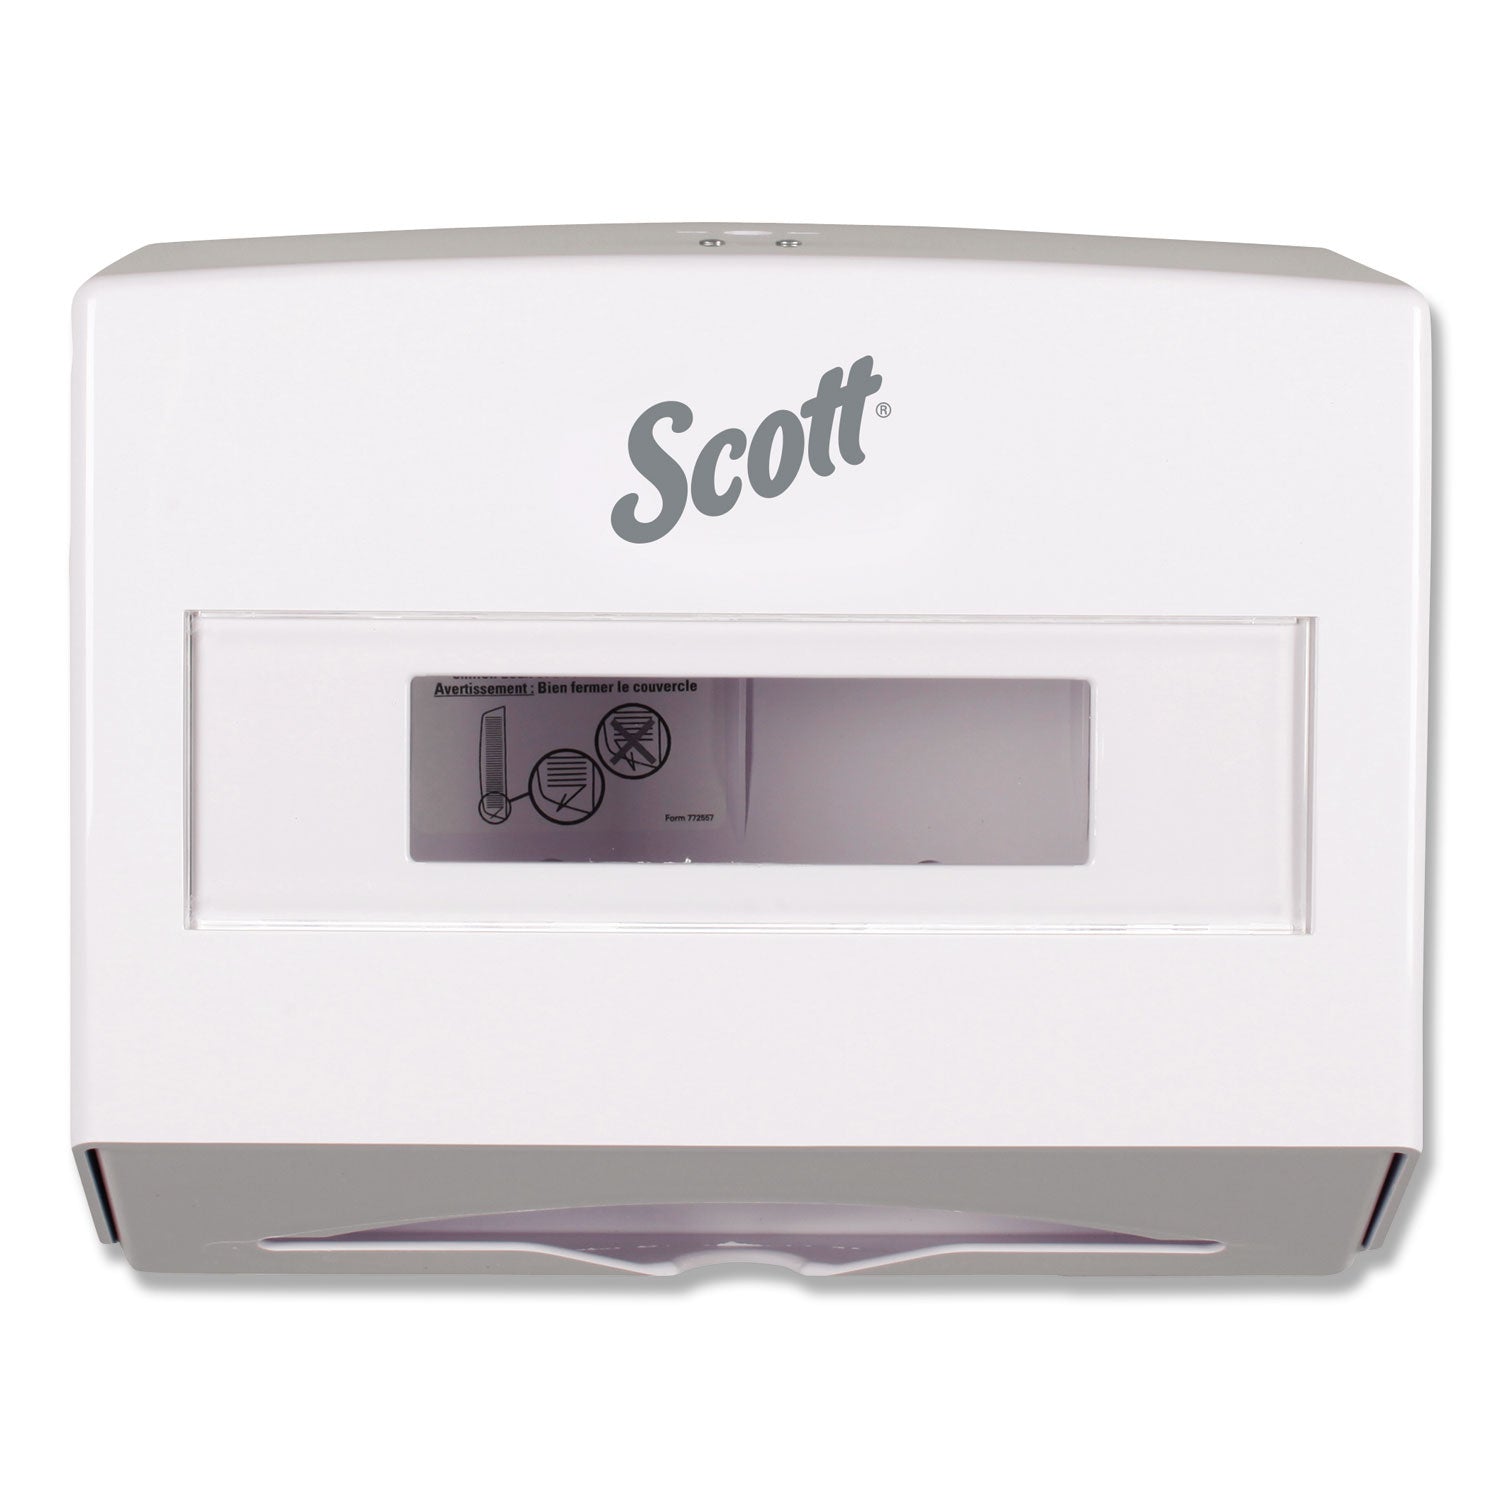 scottfold-folded-towel-dispenser-1075-x-475-x-9-white_kcc09214 - 3